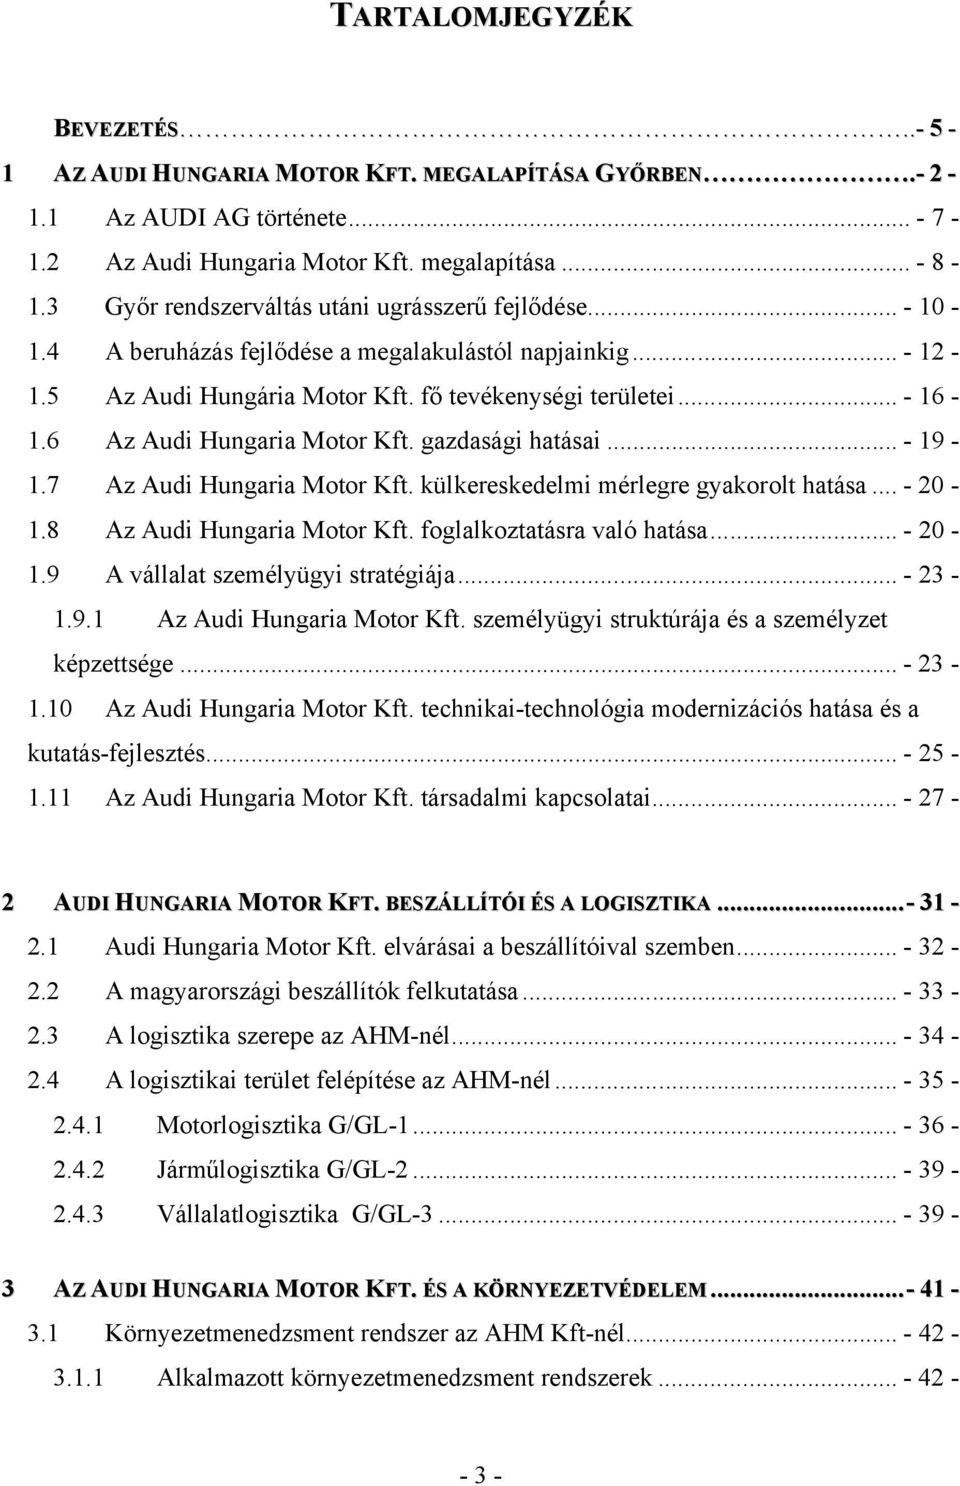 6 Az Audi Hungaria Motor Kft. gazdasági hatásai... - 19-1.7 Az Audi Hungaria Motor Kft. külkereskedelmi mérlegre gyakorolt hatása... - 20-1.8 Az Audi Hungaria Motor Kft. foglalkoztatásra való hatása.